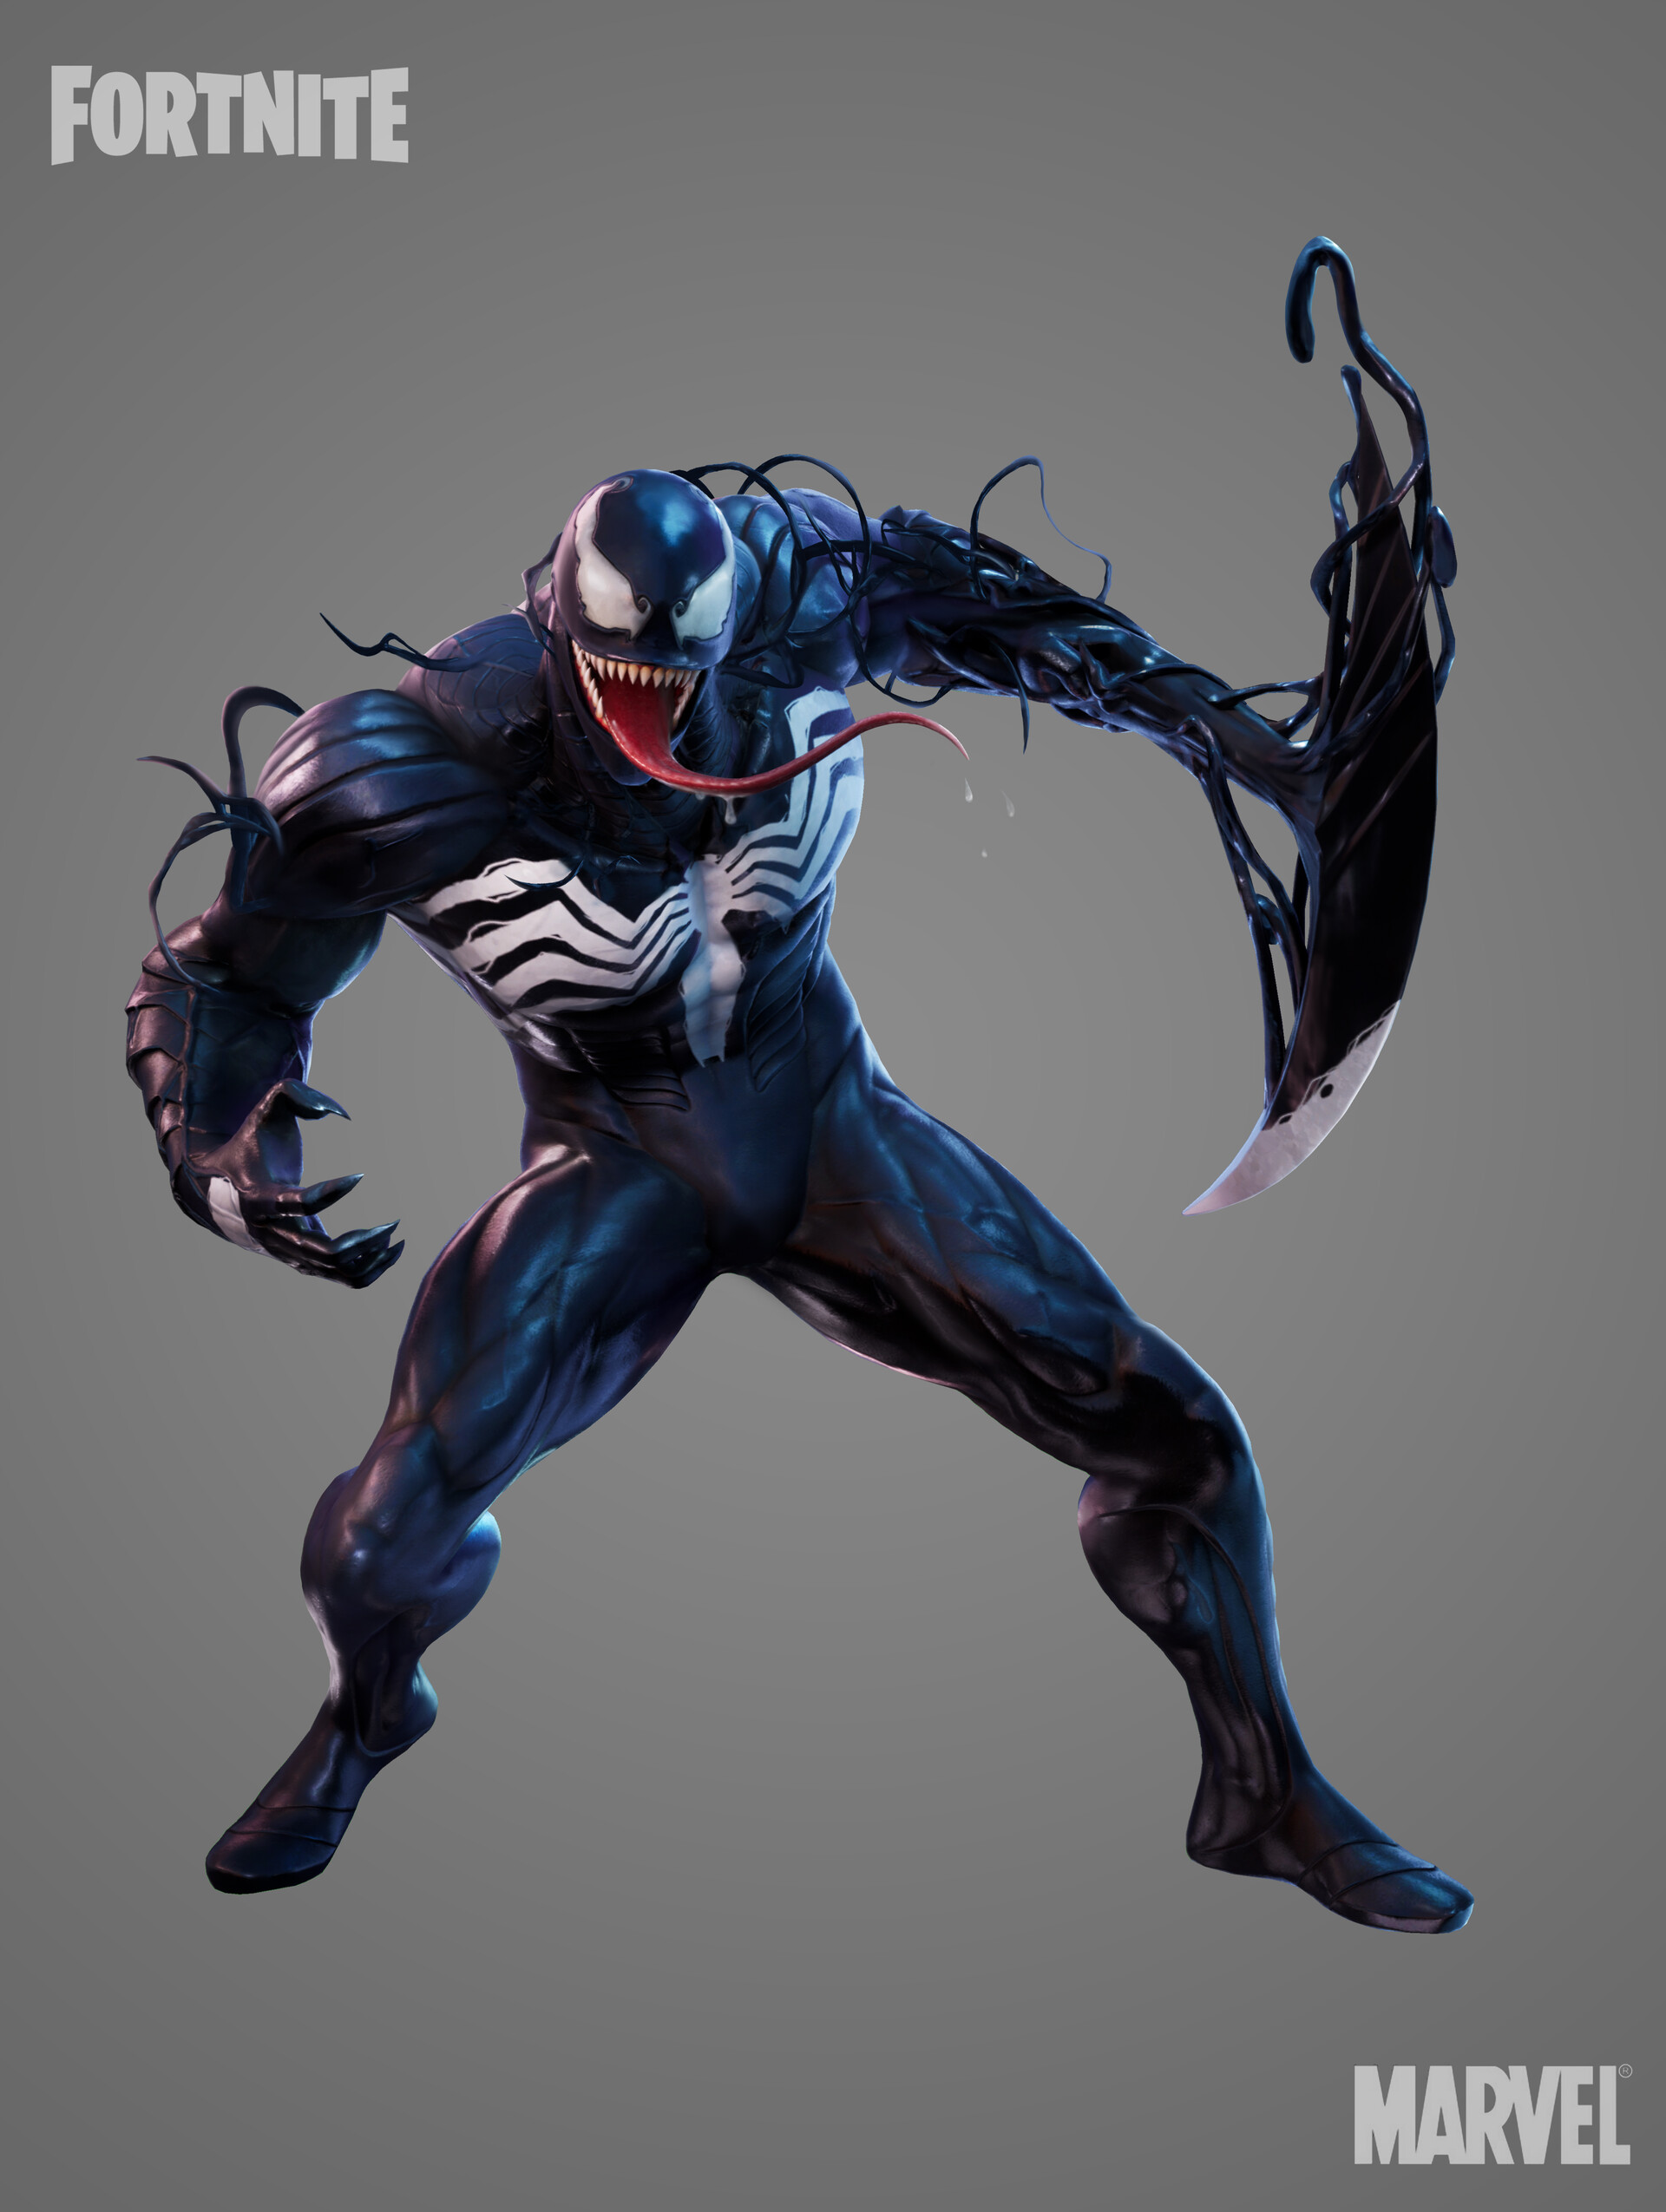 53 HQ Photos Fortnite Venom Skin Buy - Fortnite Venom ...